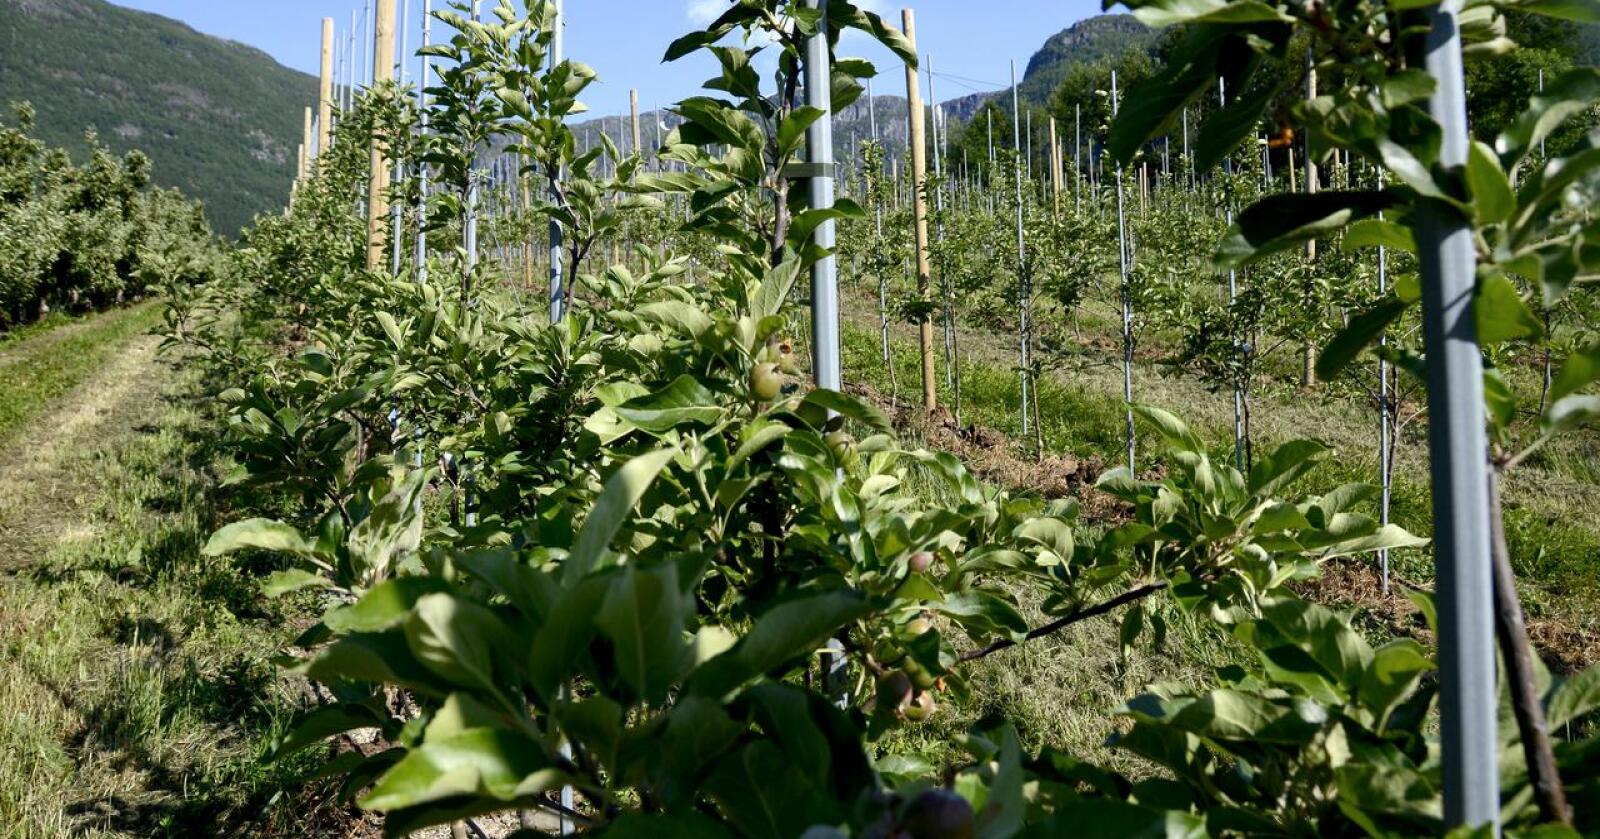 Frukttrær blir med mildere klima mer utsatt for angrep fra skadegjørere. Foto: Mariann Tvete